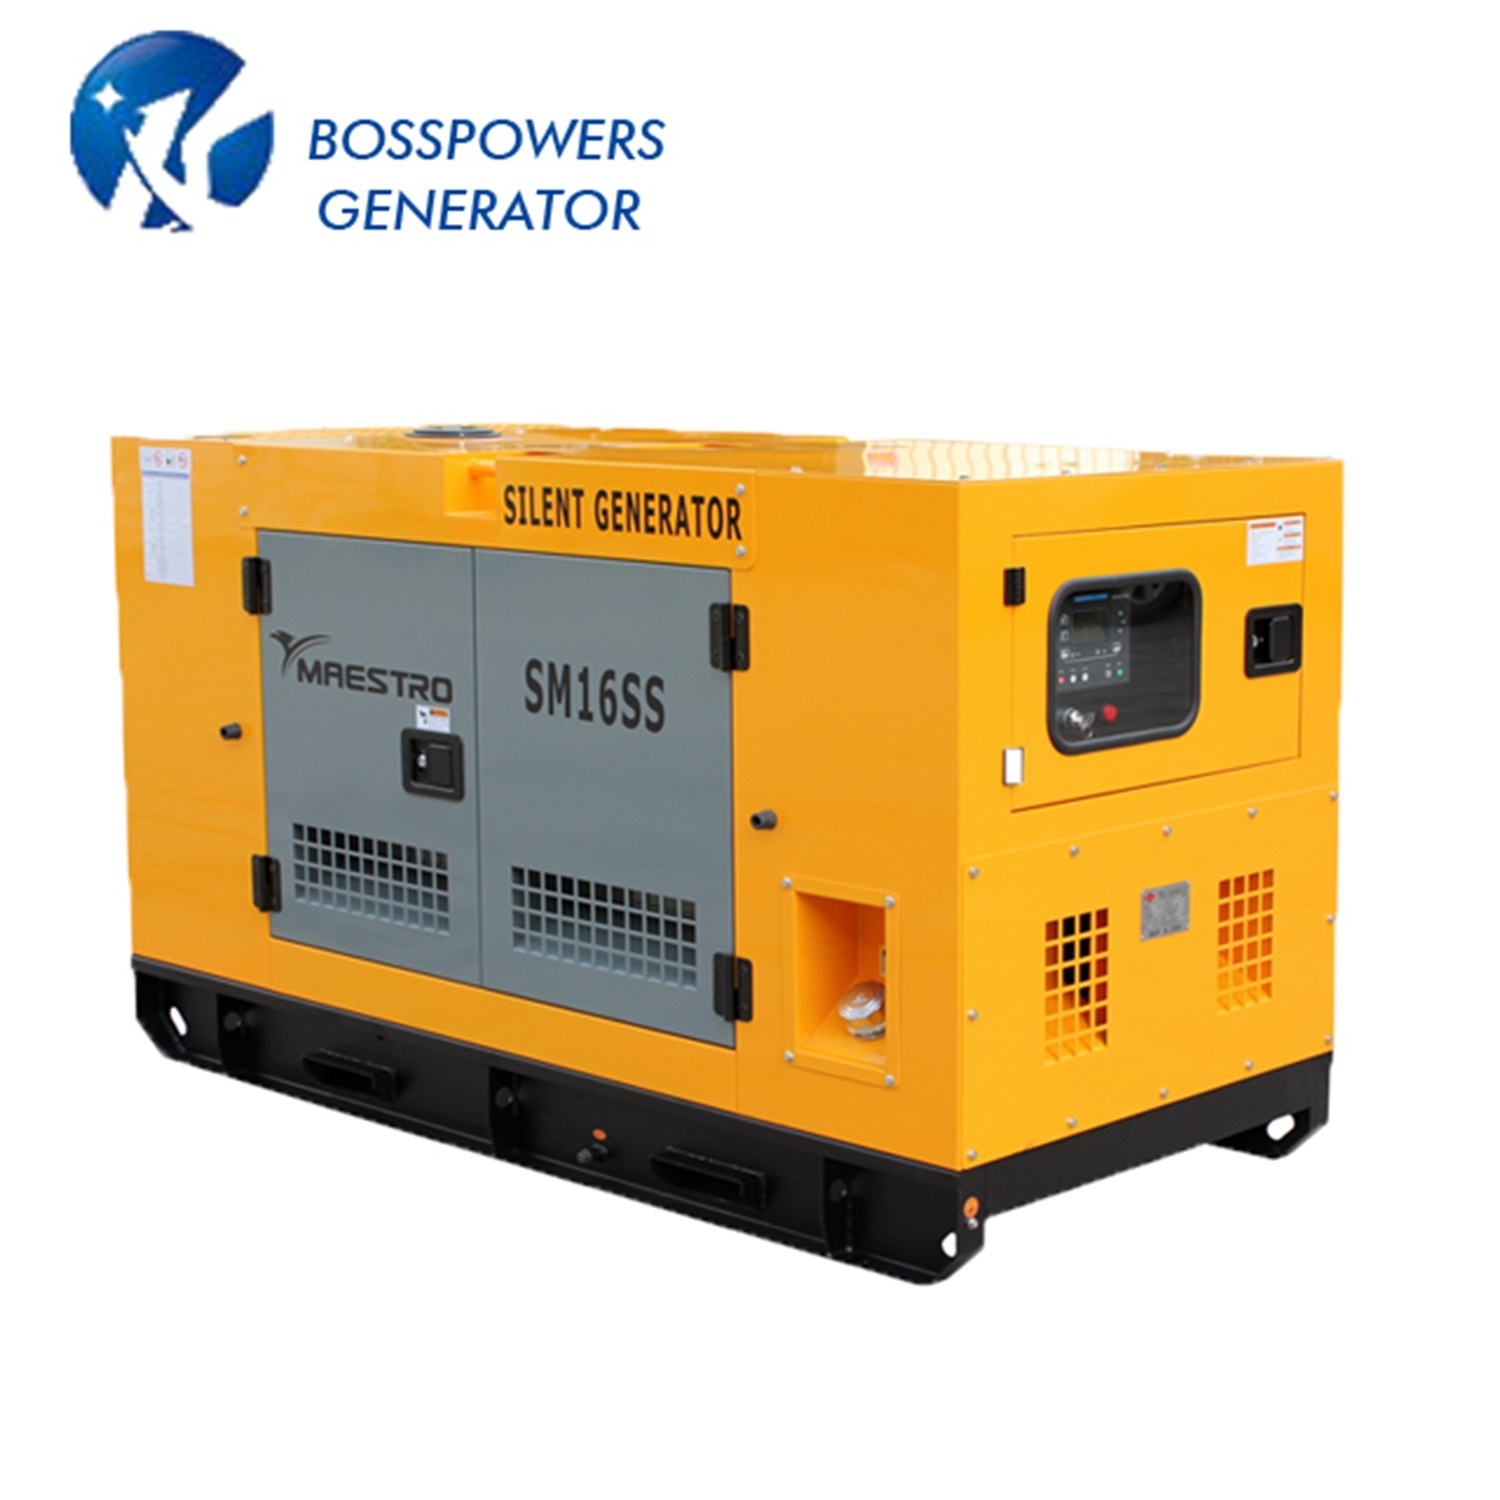 50Hz 60Hz Diesel Generator Set Power Generator Powered by 3tnm68-Gge